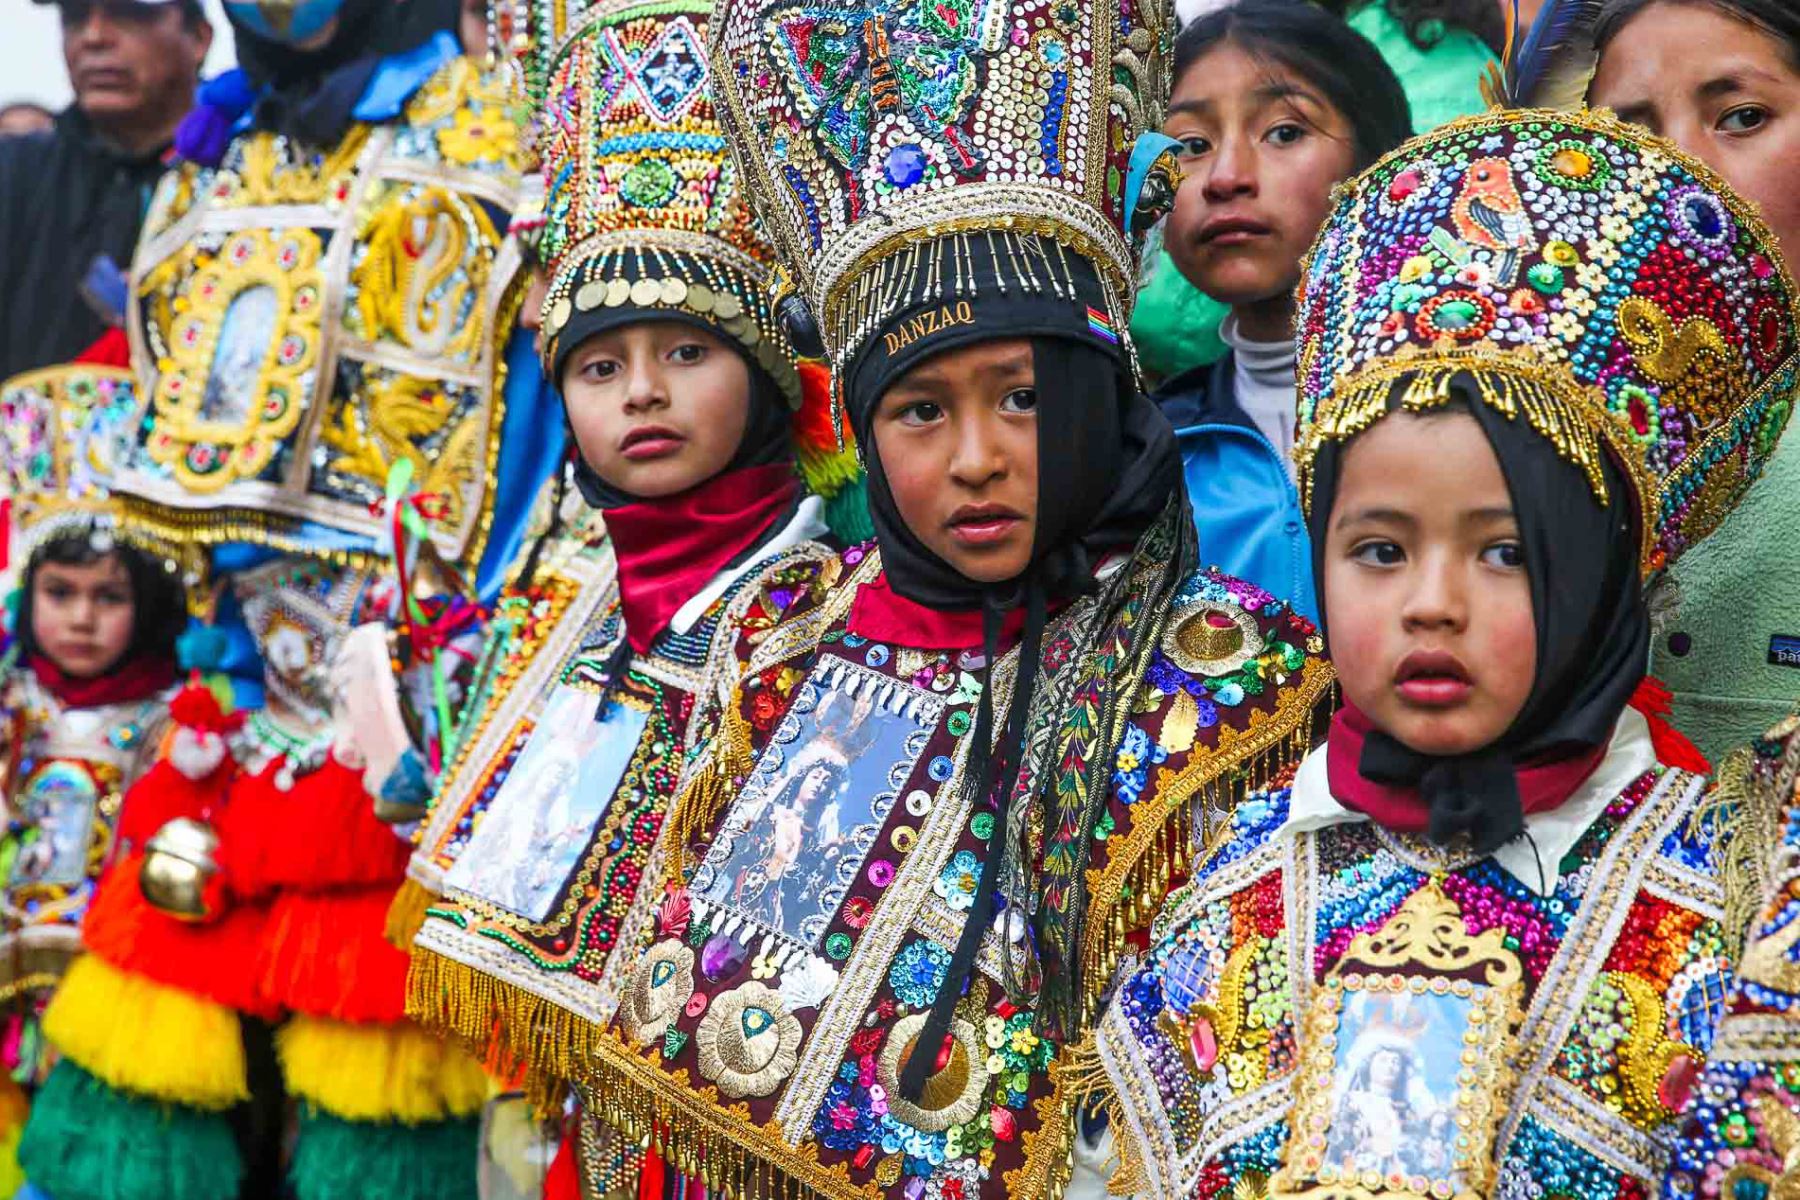 Una de las celebraciones más importantes del mes de julio en el departamento del Cusco es la Festividad en honor de la Virgen del Carmen de Paucartambo, cuya multitudinaria devoción religiosa y apoteósica expresión de identidad le valieron el reconocimiento como Patrimonio Cultural de la Nación. Foto: ANDINA/ Carlos Lezama Villantoy